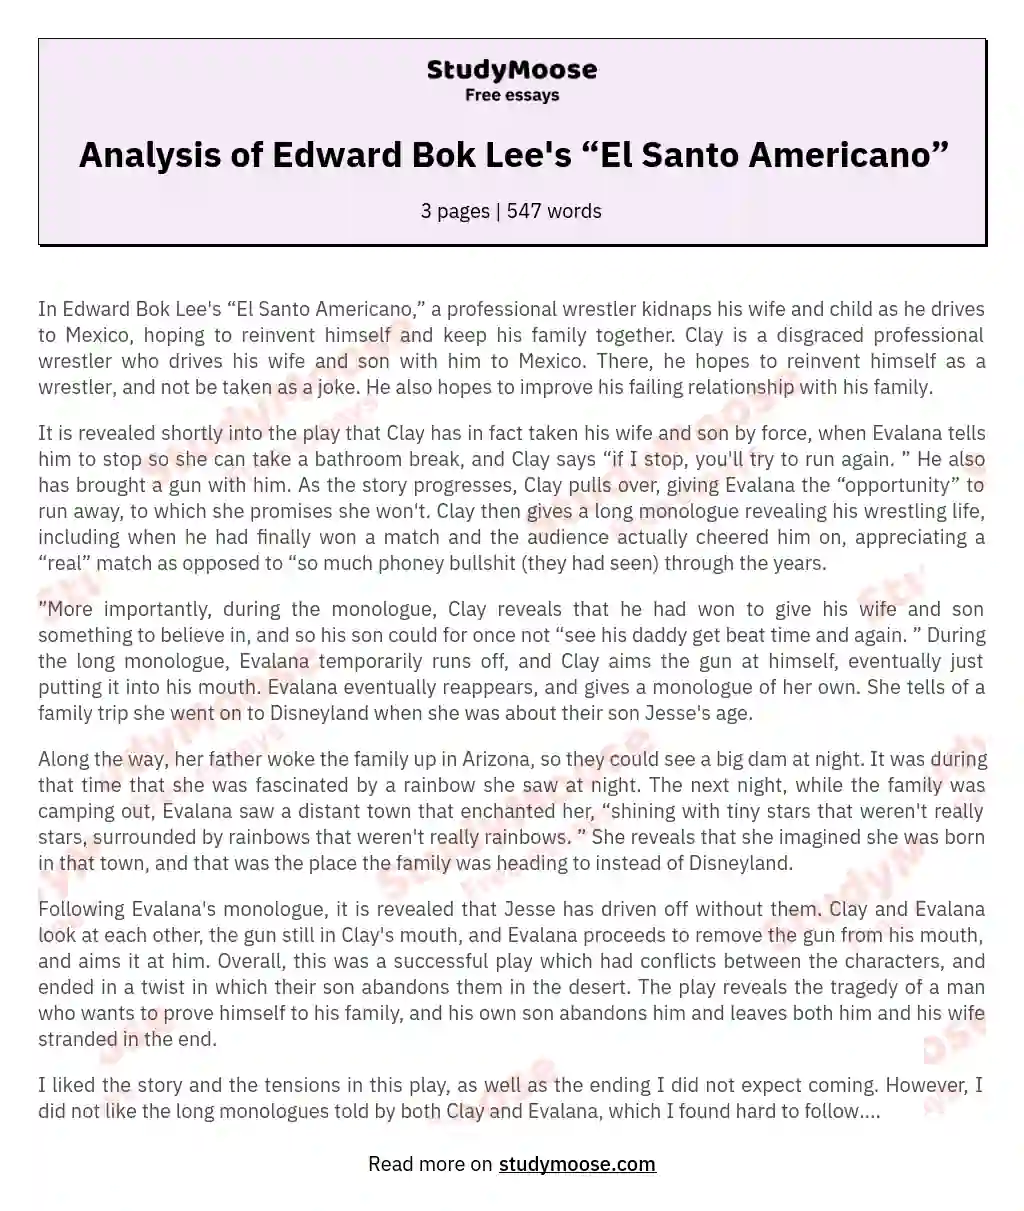 Analysis of Edward Bok Lee's “El Santo Americano” essay